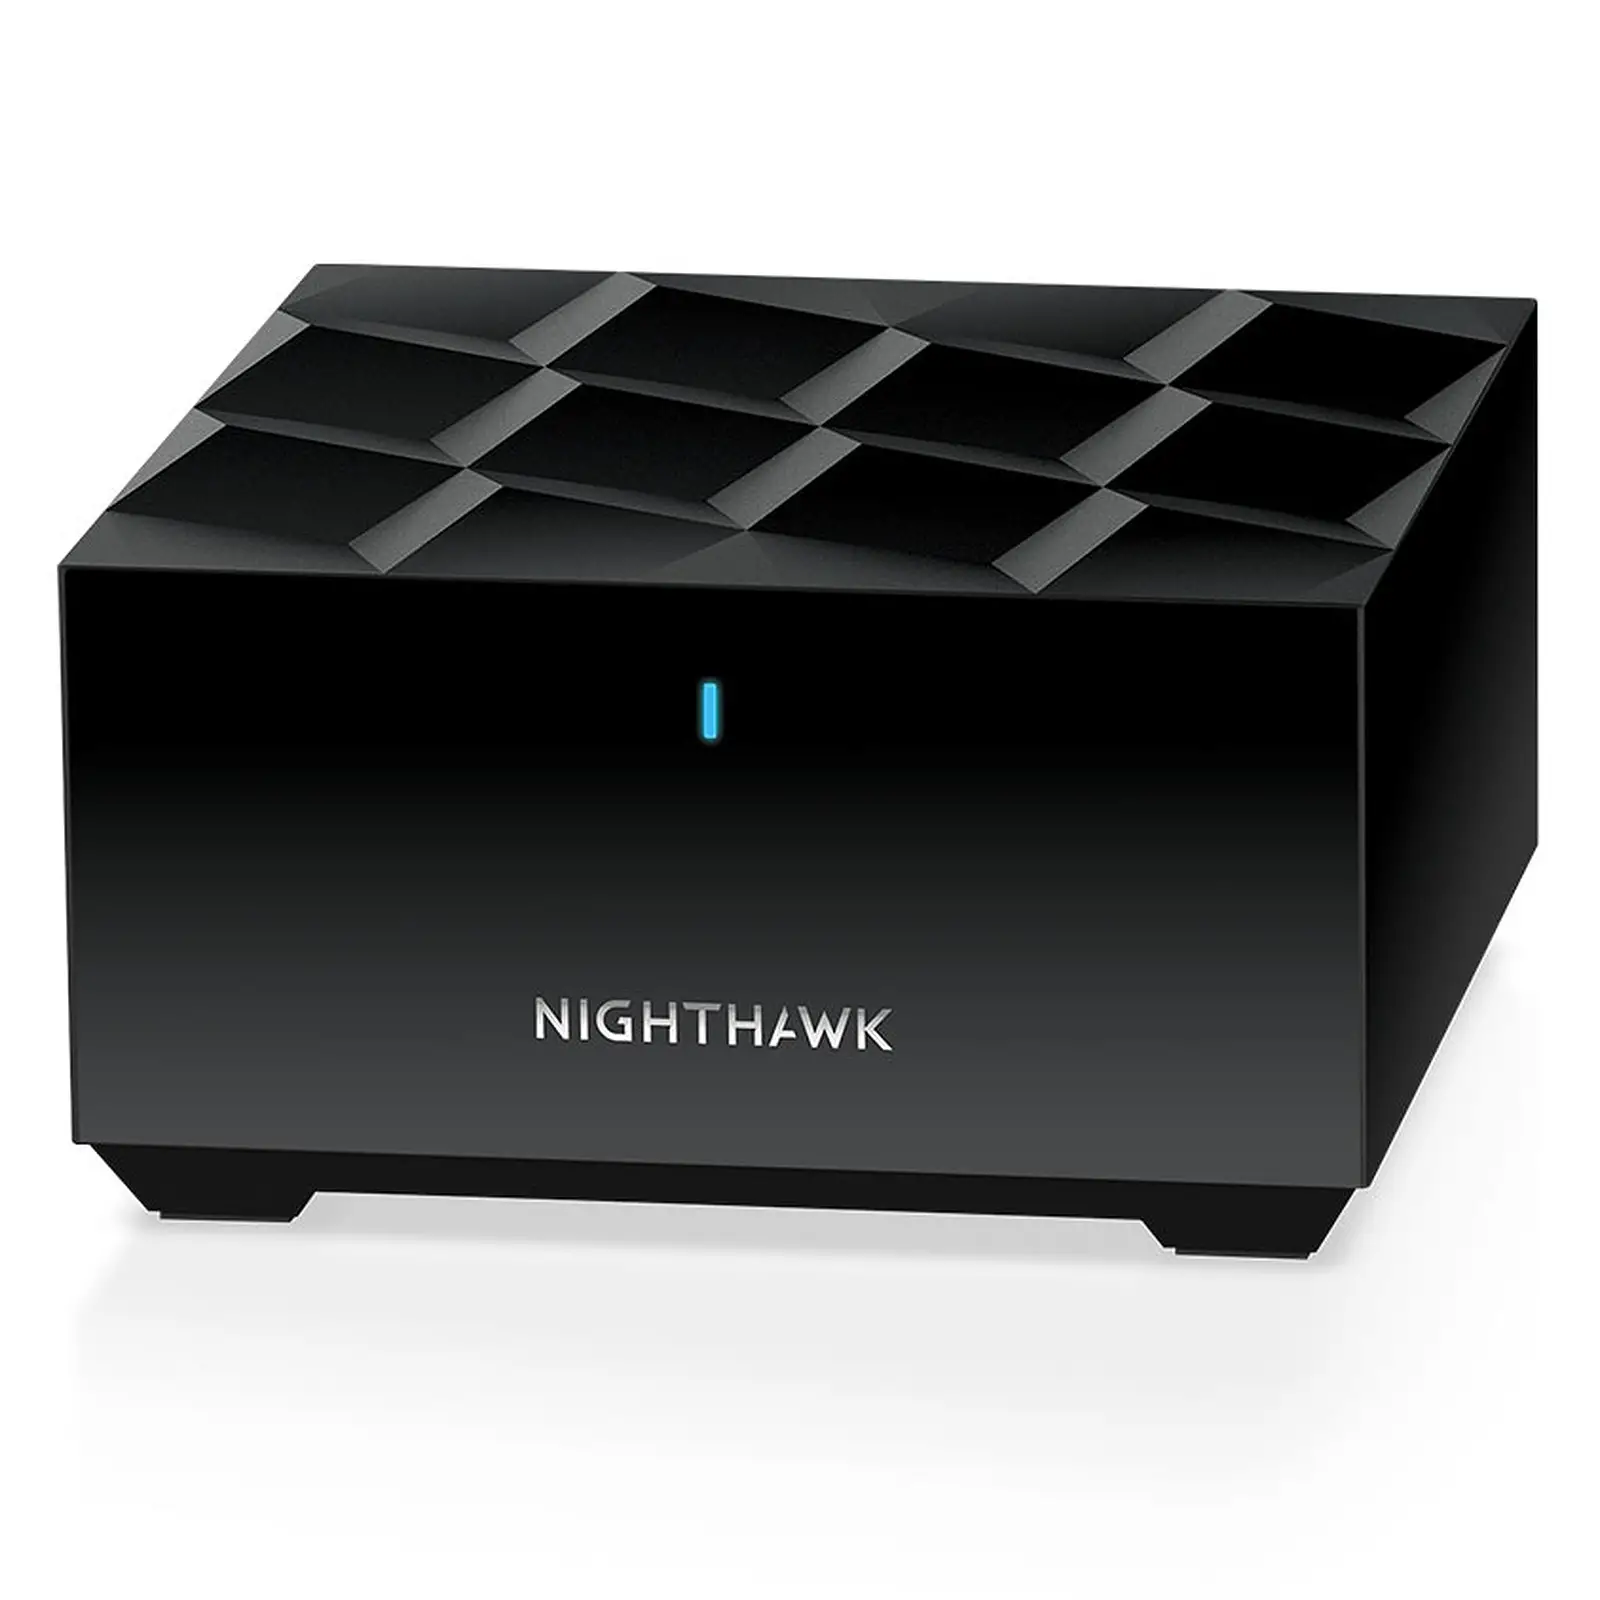 Der Netgear nighthawk mesh wifi 6 nimmt eine schwarze Farbe an, die bei Mesh-Routern unüblich ist.